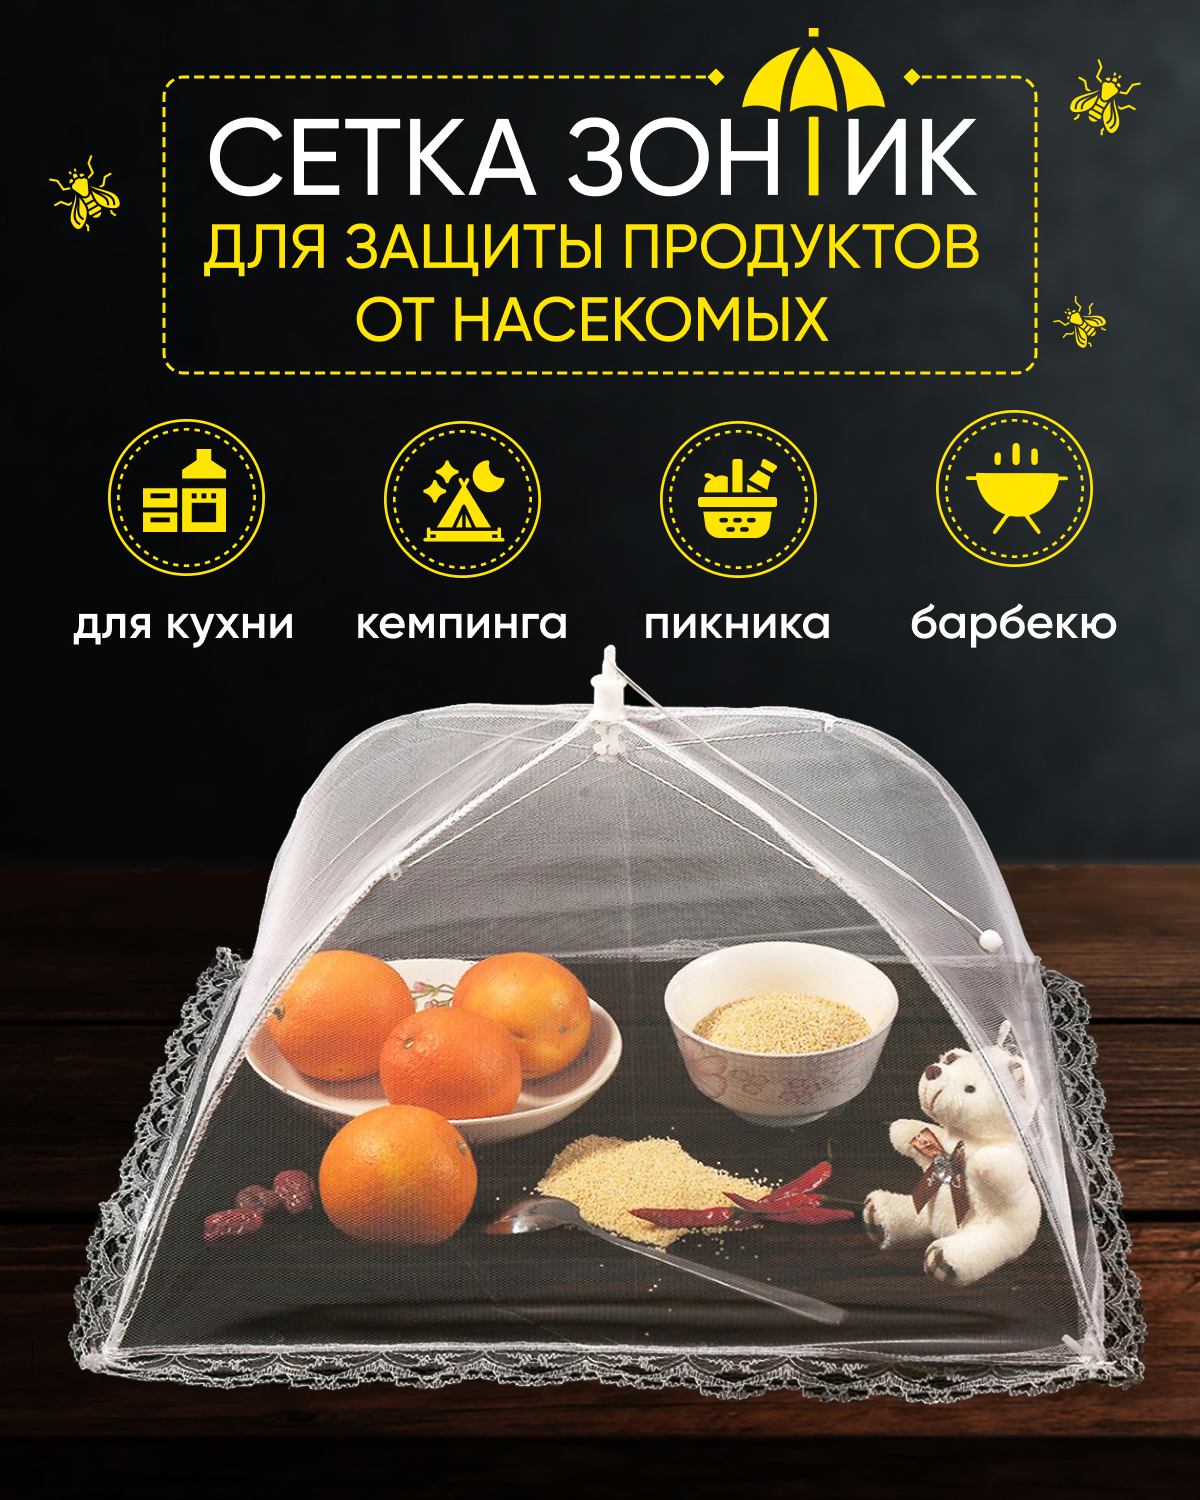 Раскладная сетка зонтик S-MAX для защиты продуктов и еды от насекомых 48 х 48 см, белая